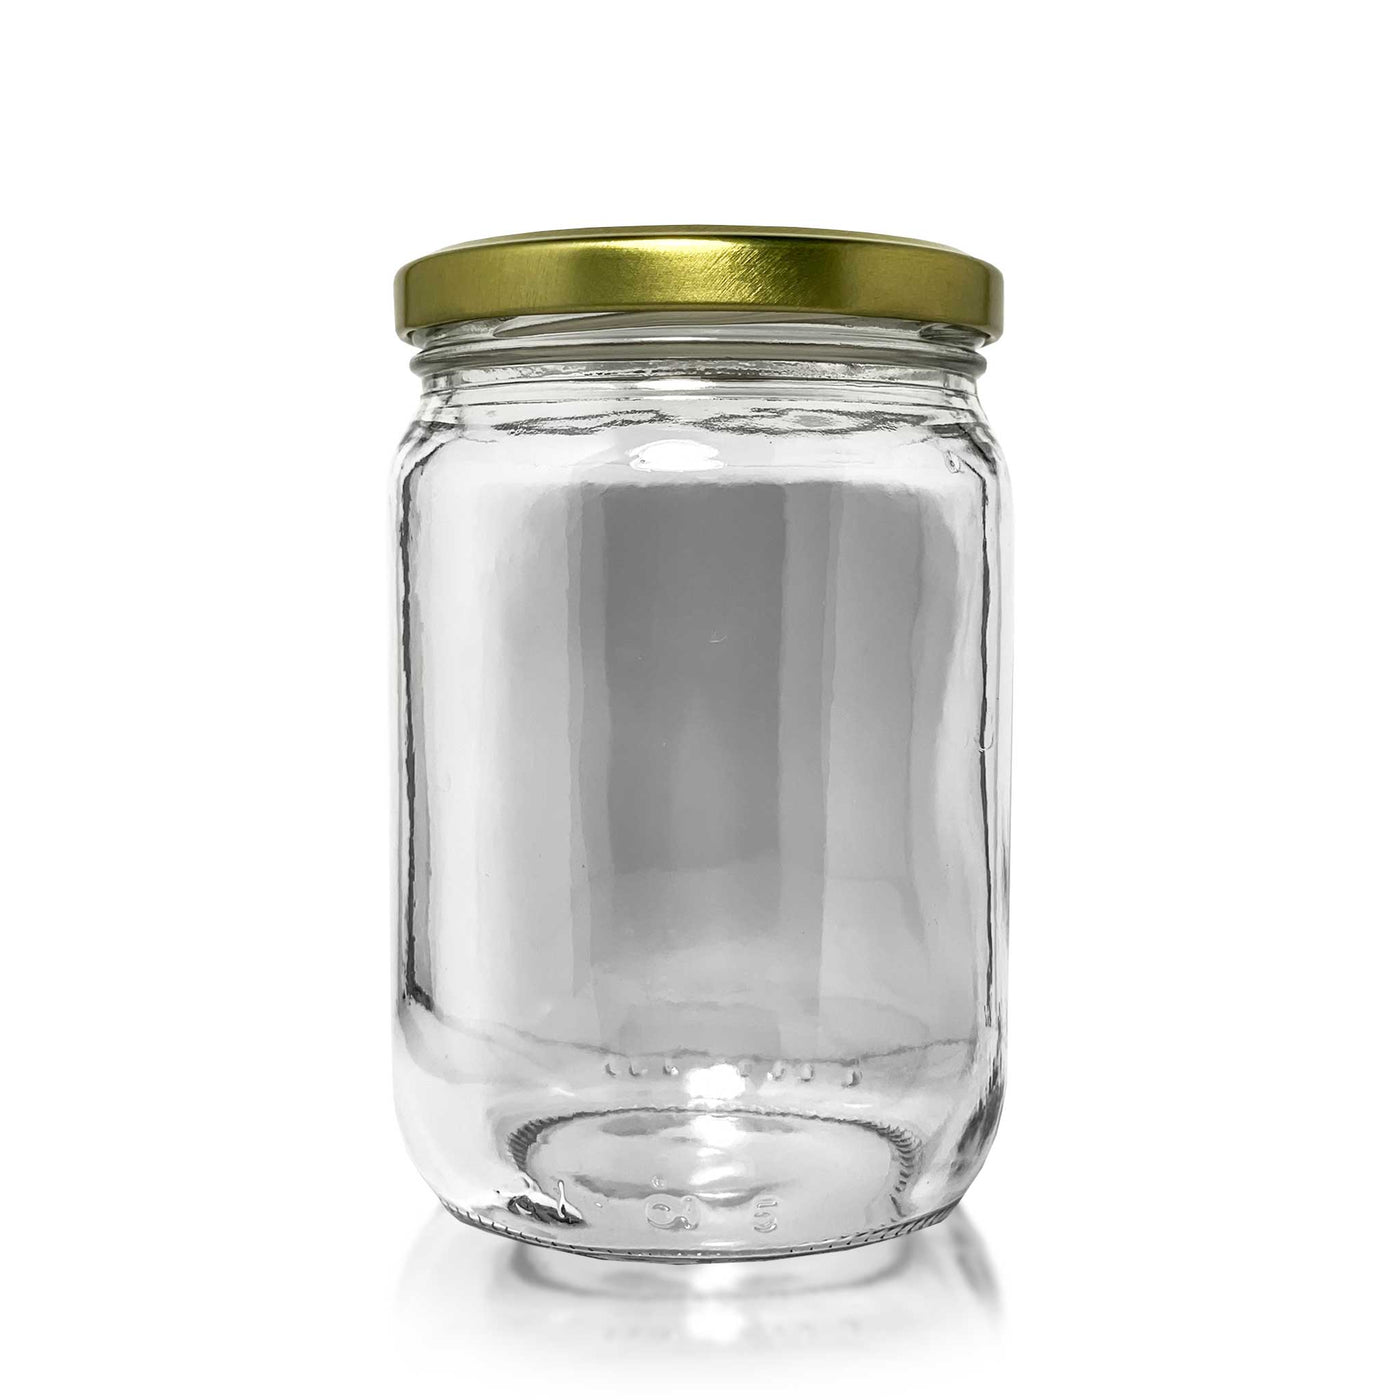 1 lb Jar